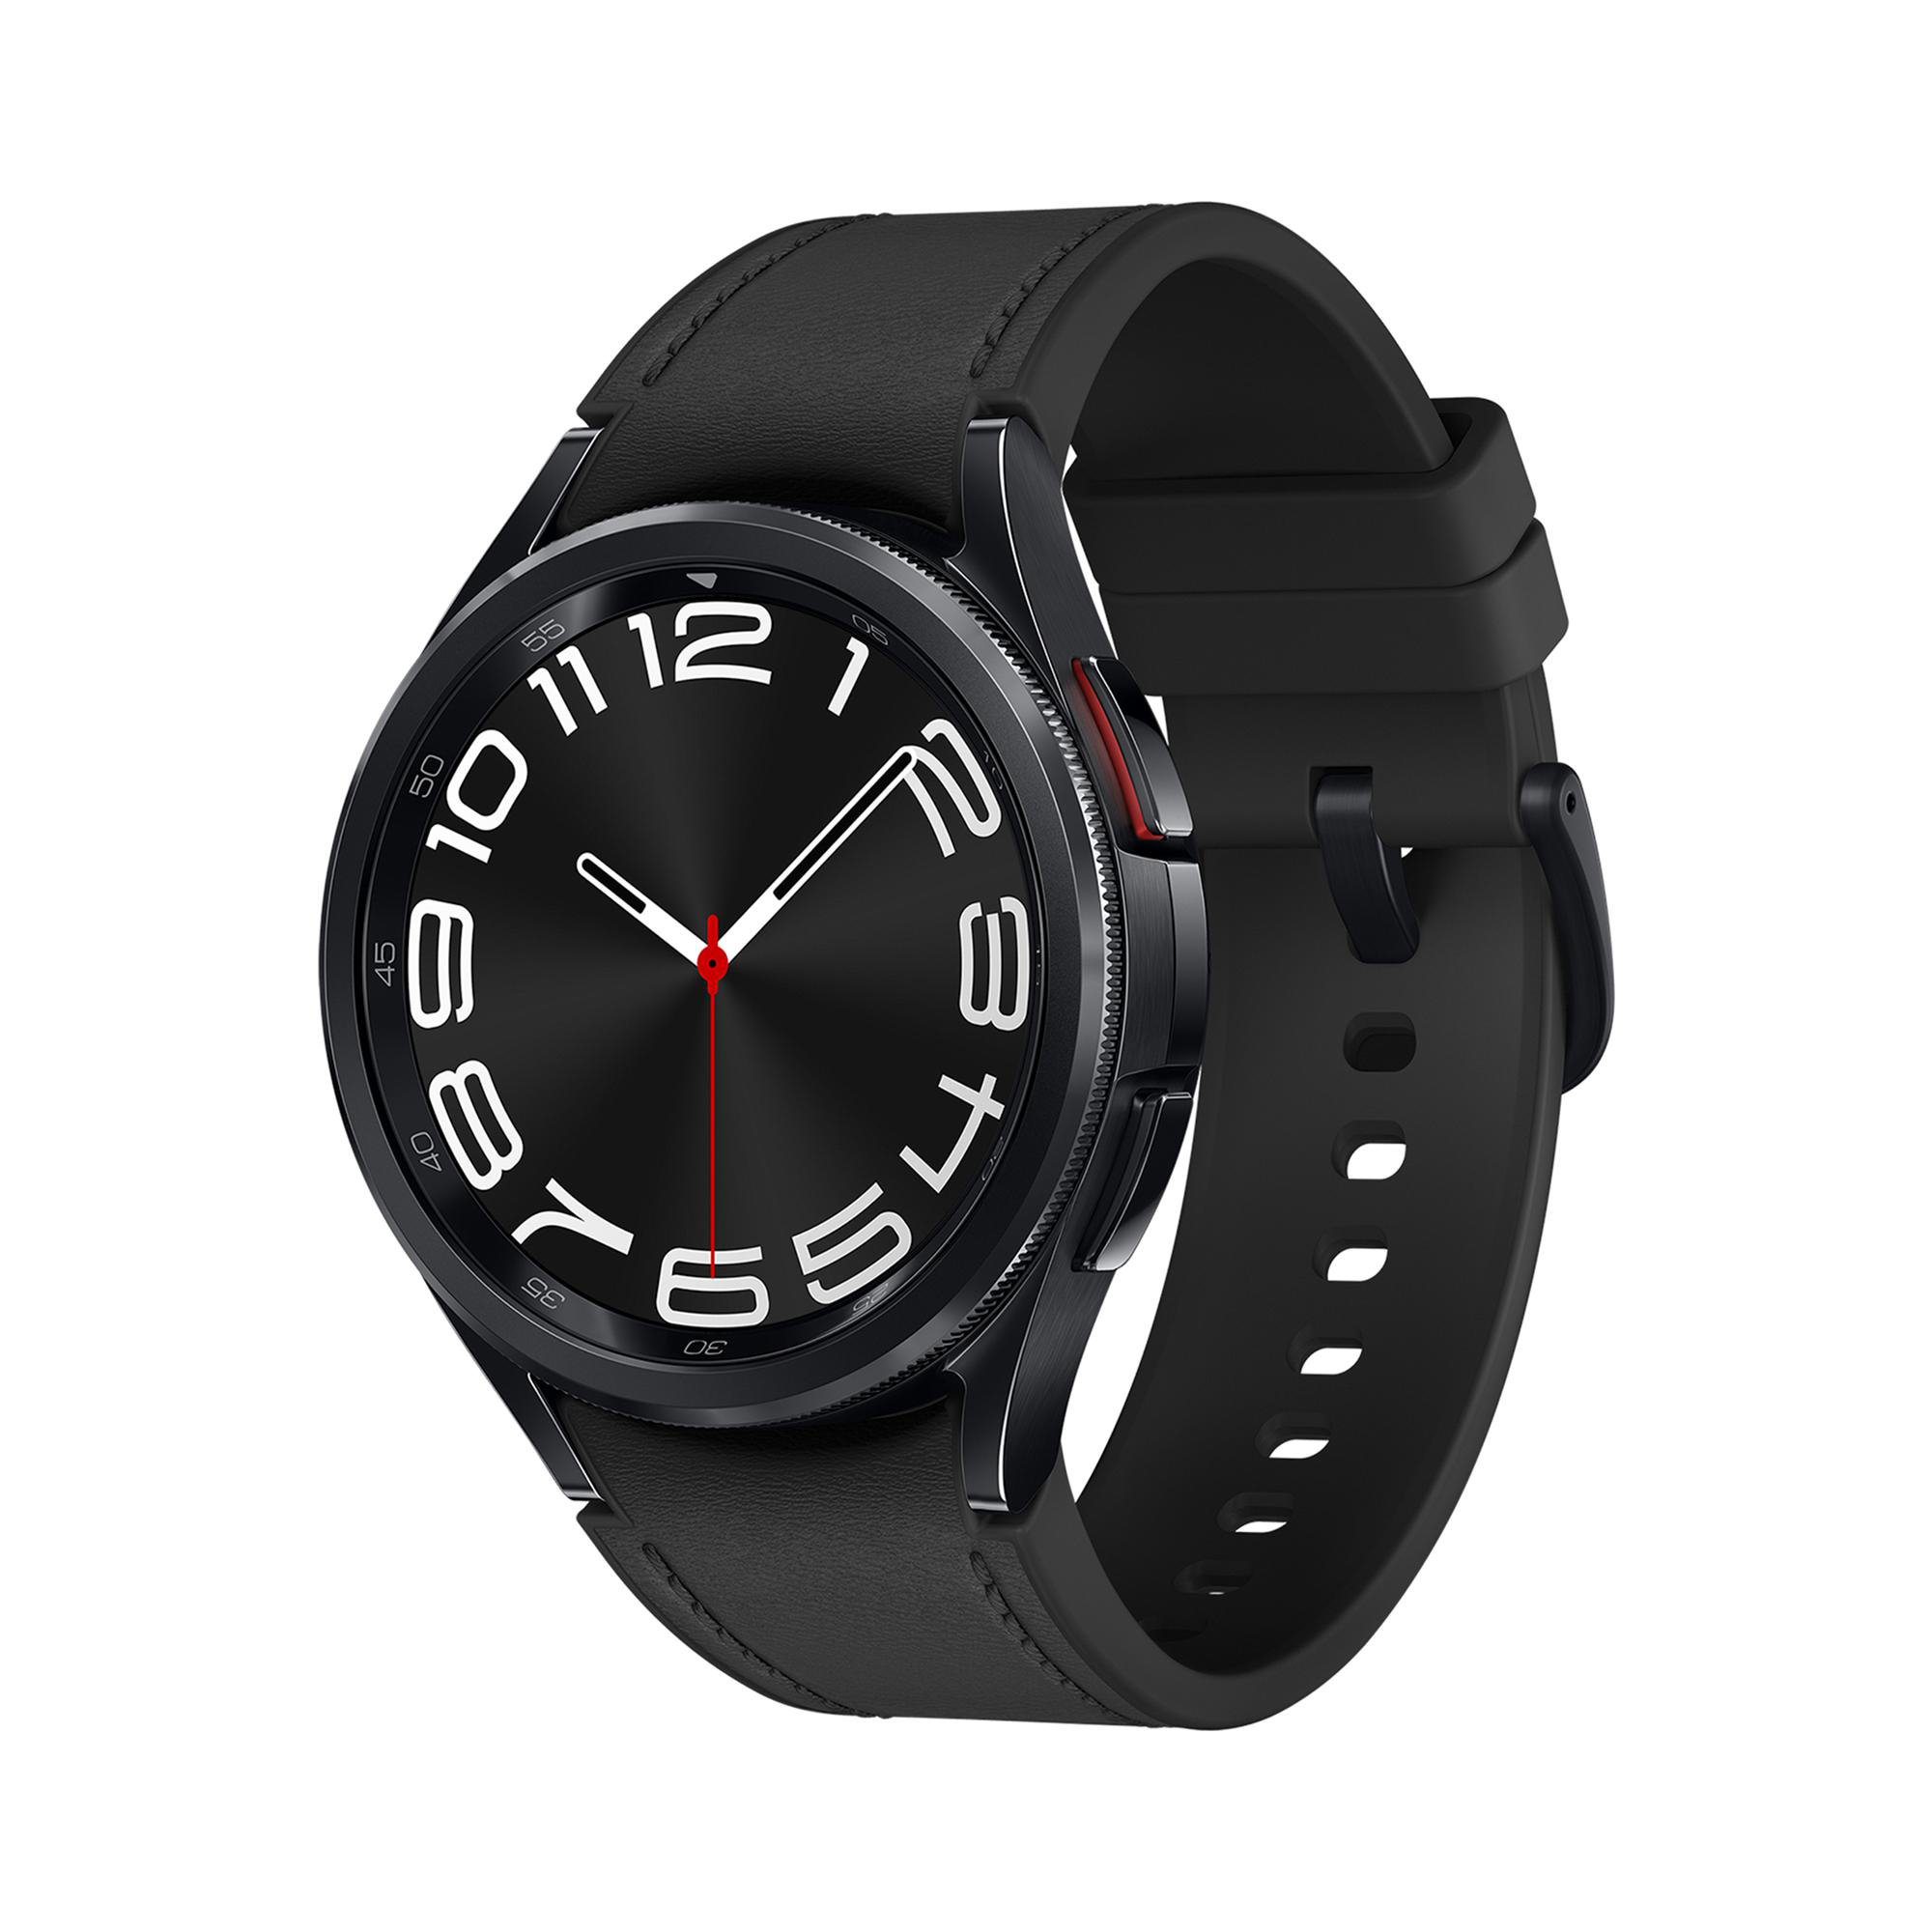 Galaxy Kunstleder, S/M, Black SAMSUNG 43 LTE mm Watch6 Smartwatch Classic